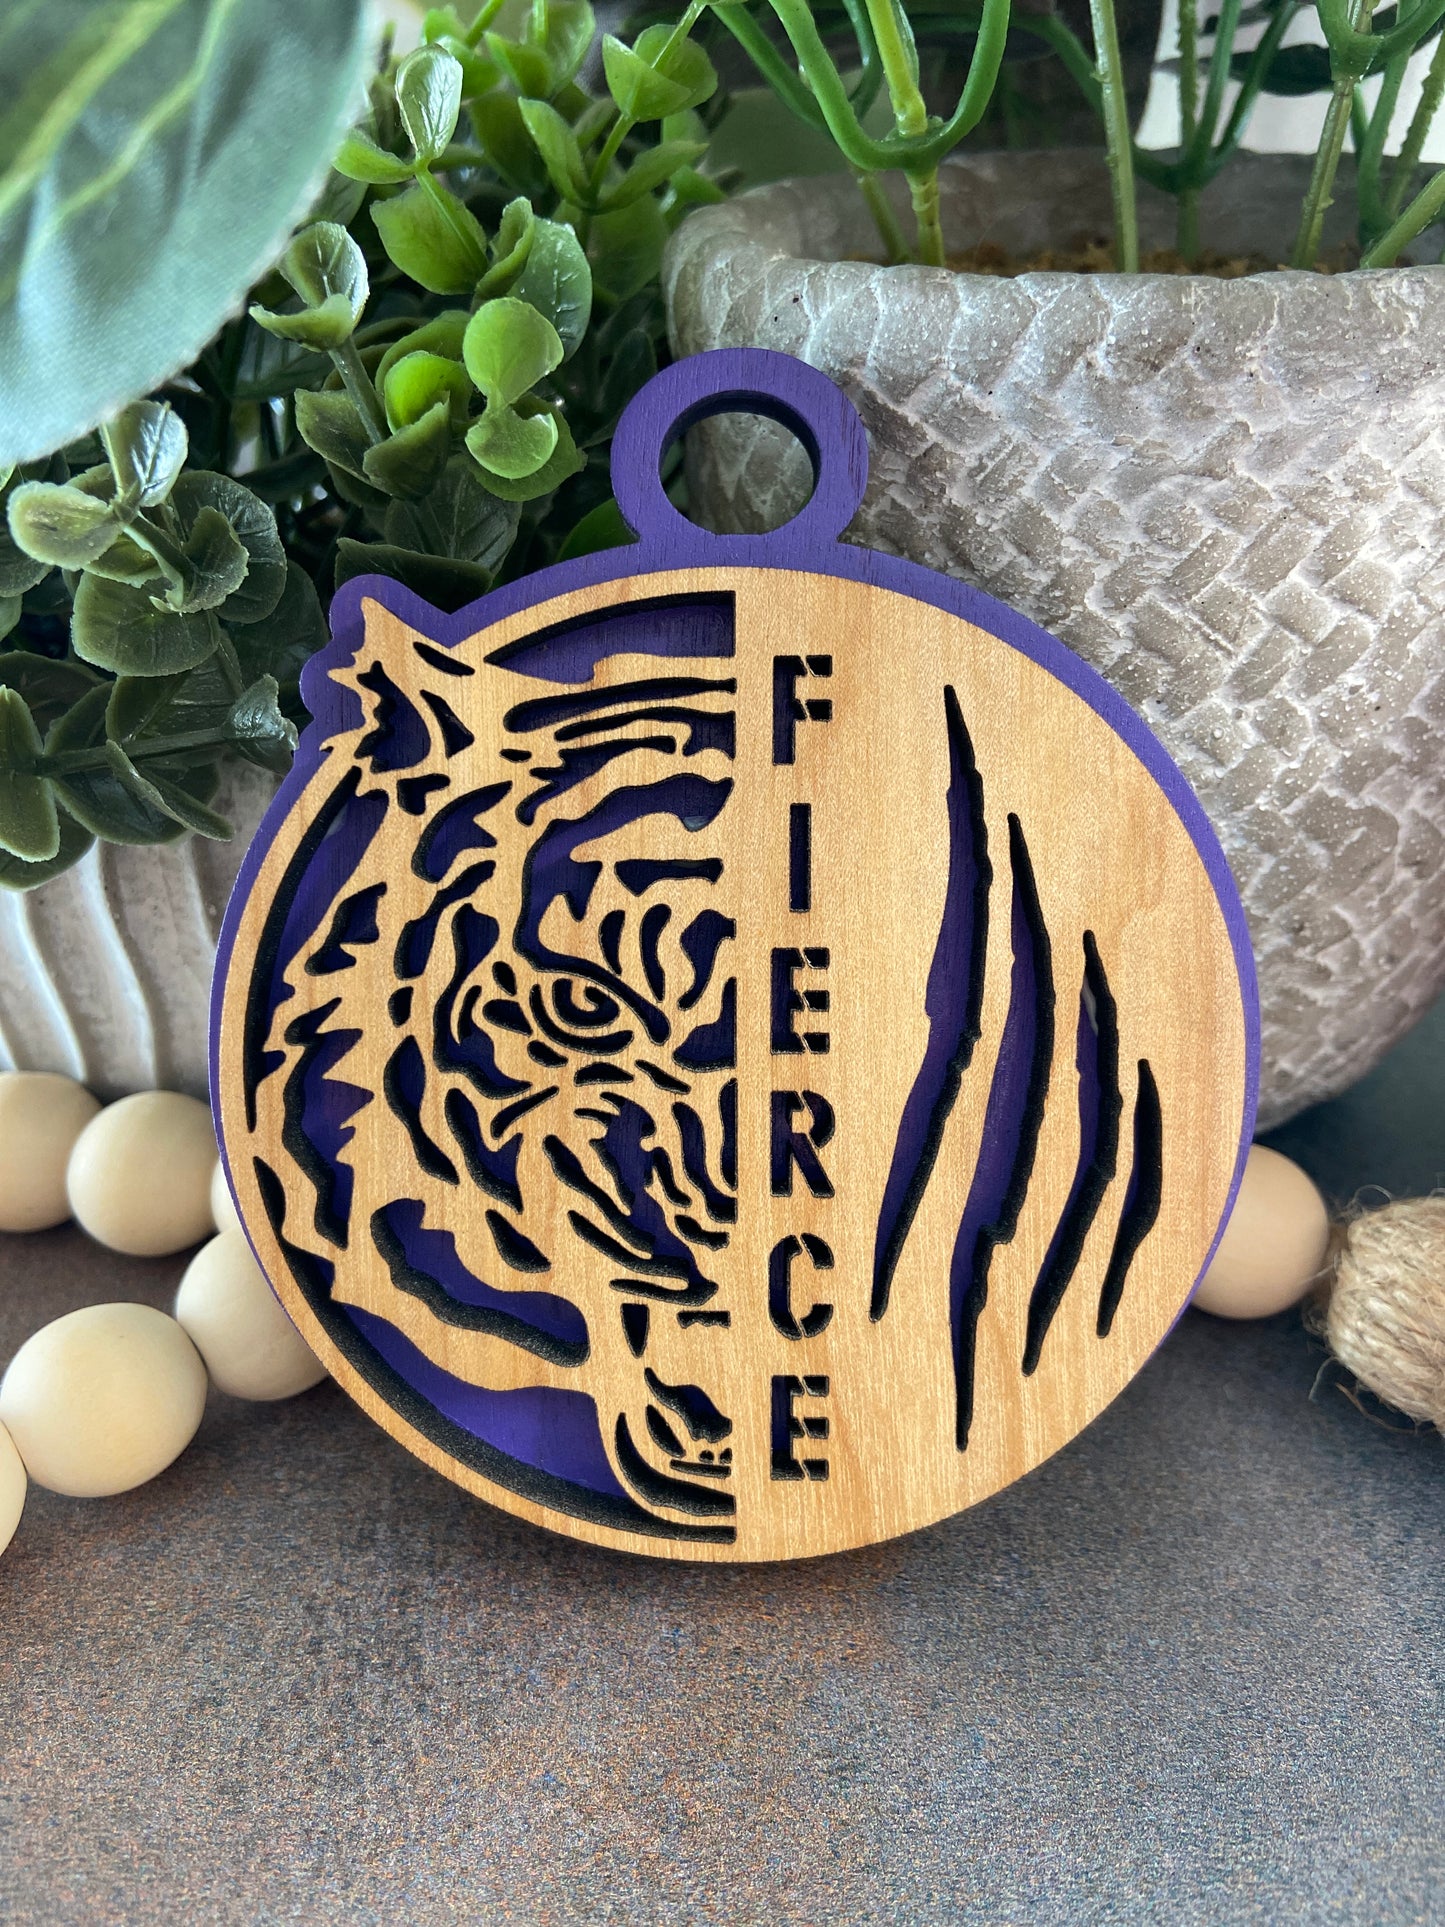 Fierce Tiger Ornament